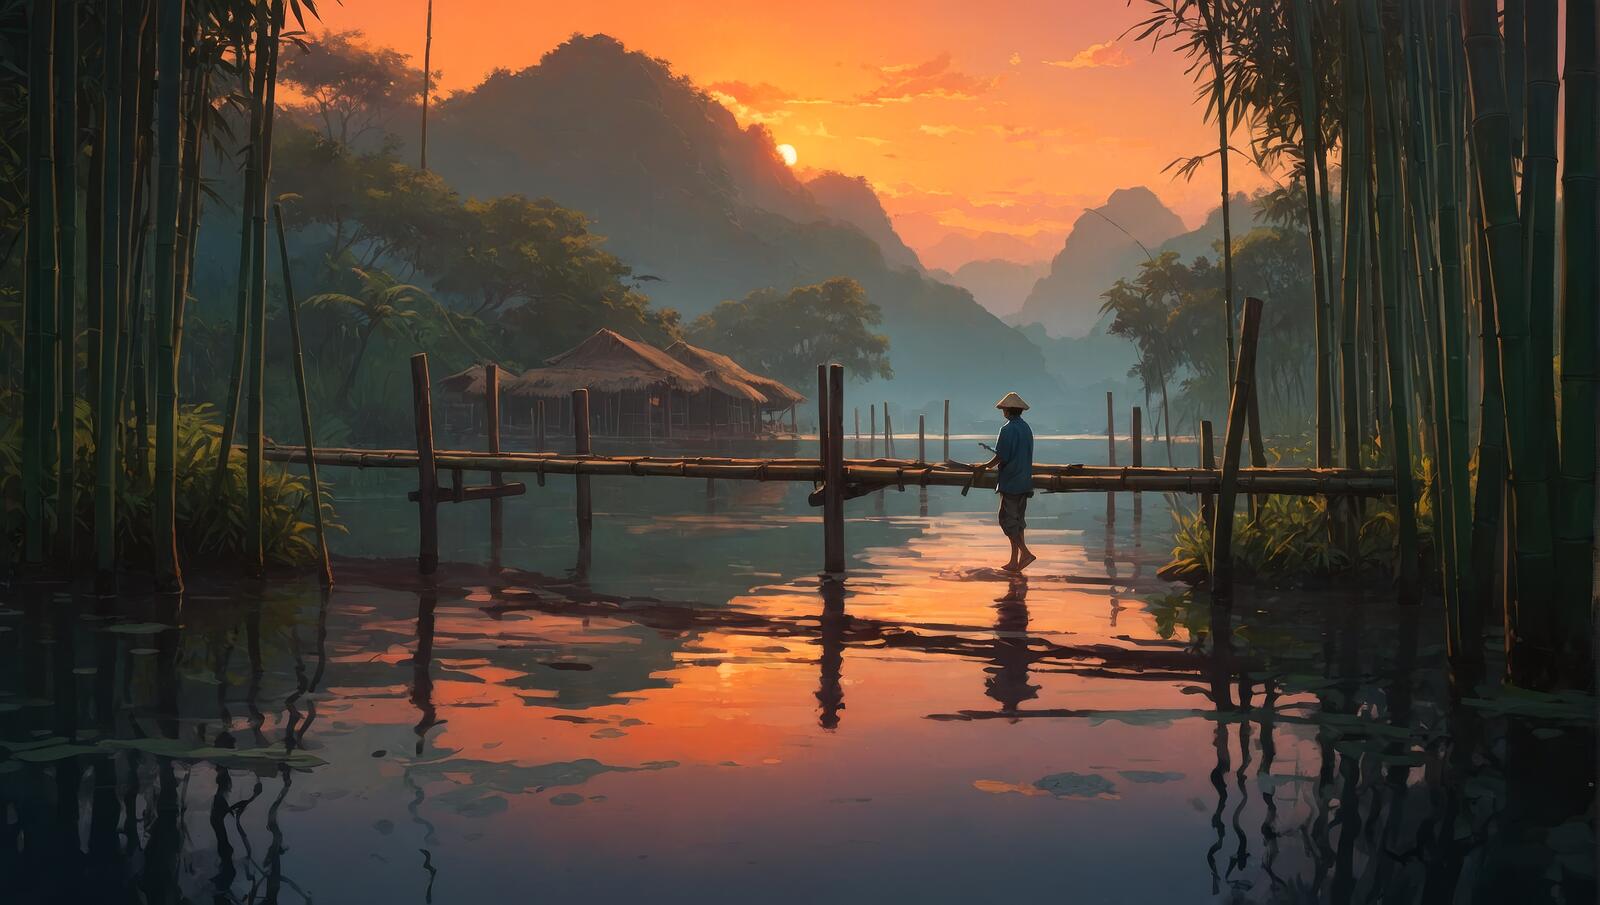 Бесплатное фото Человек стоит на причале у воды и бамбуковых деревьев